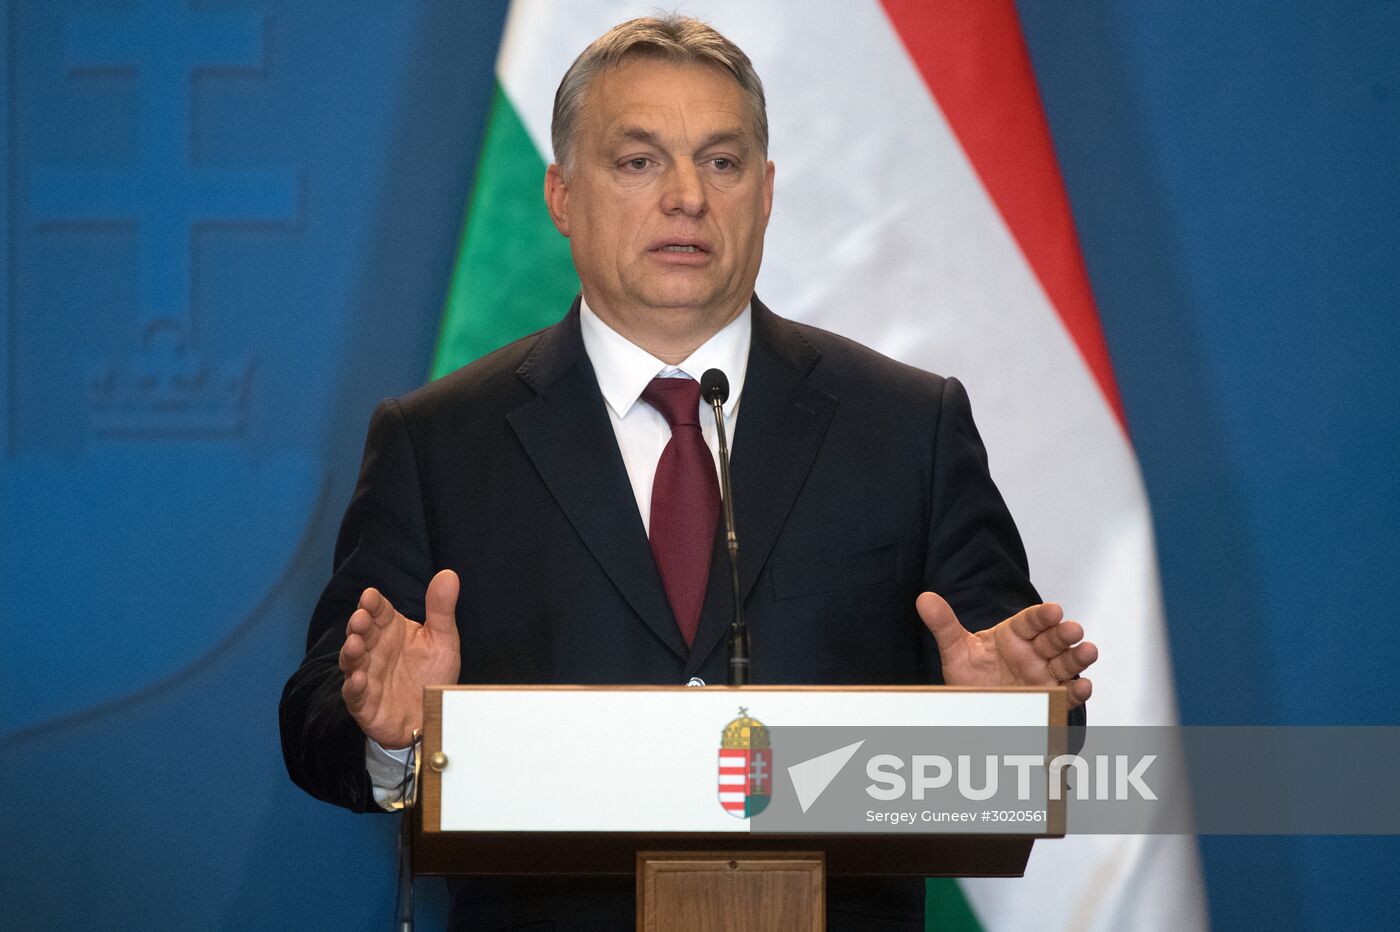 Russian President Vladimir Putin's working visit to Hungary